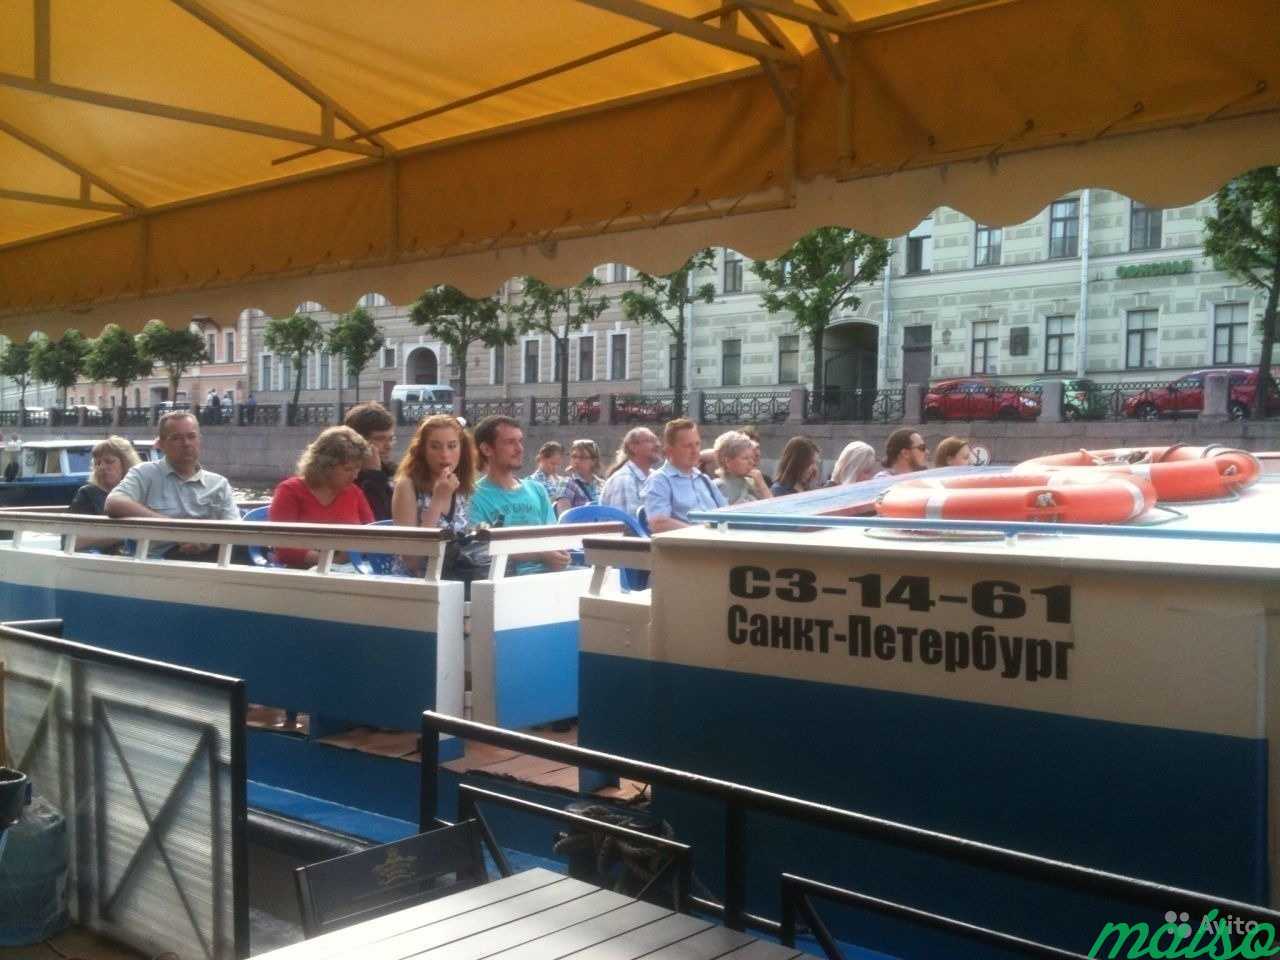 Аренда катера теплохода без посредников в Санкт-Петербурге. Фото 4